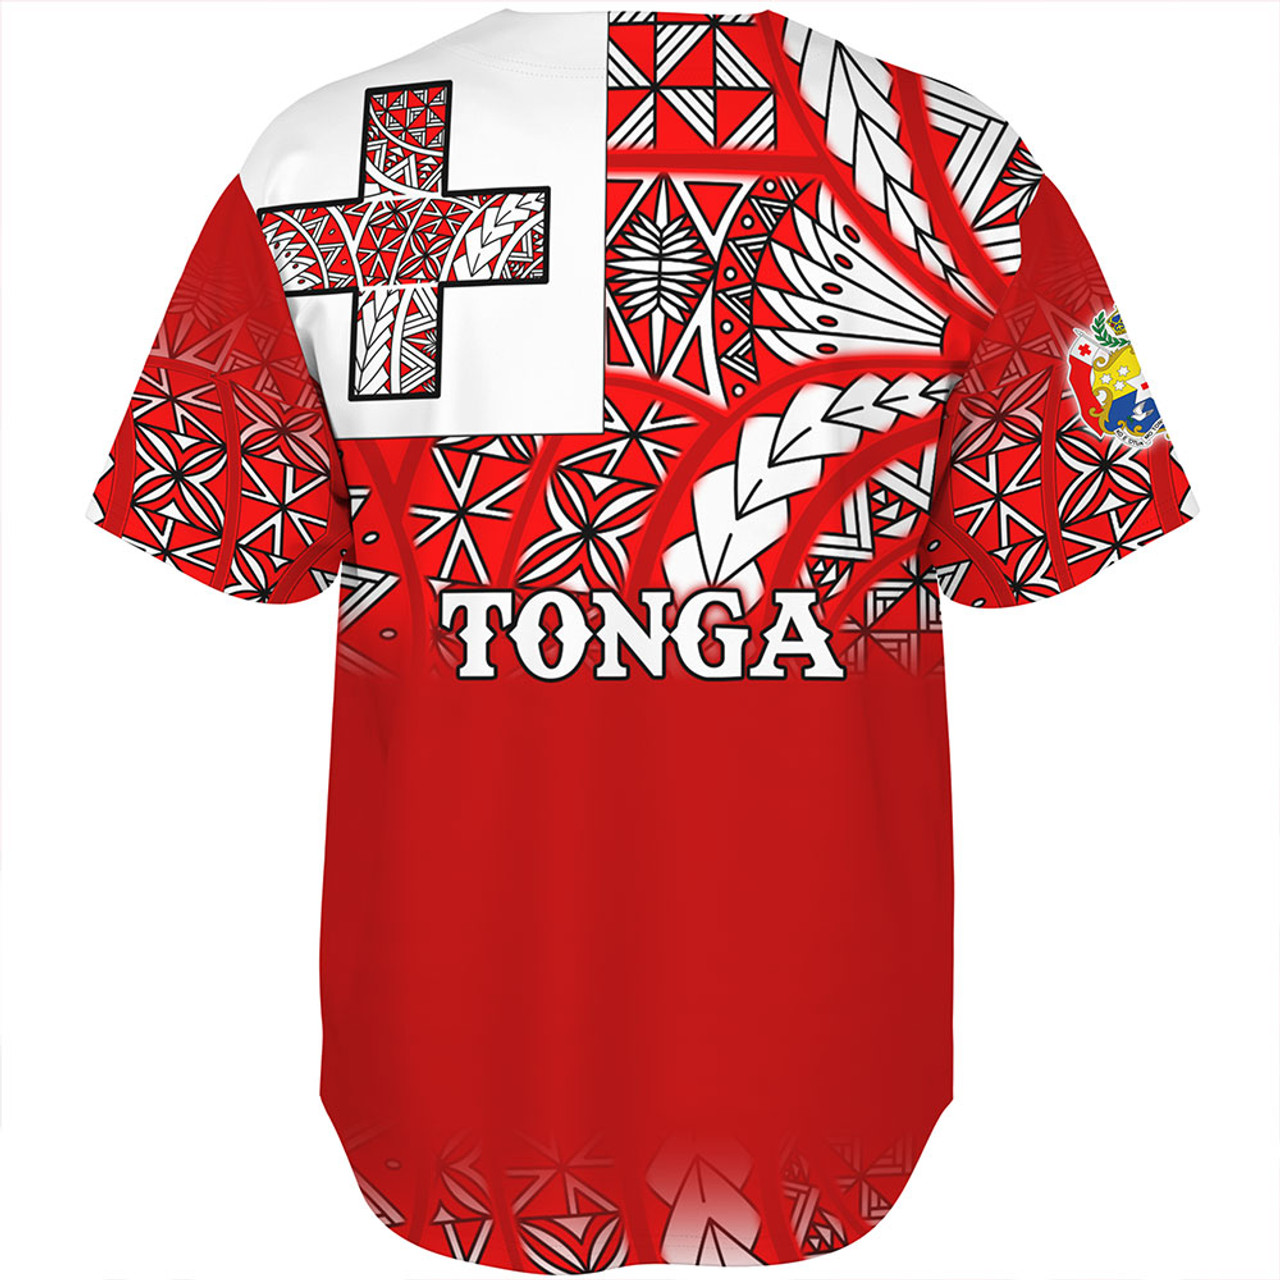 Tonga Baseball Shirt - Tonga Flag Color With Traditional Patterns